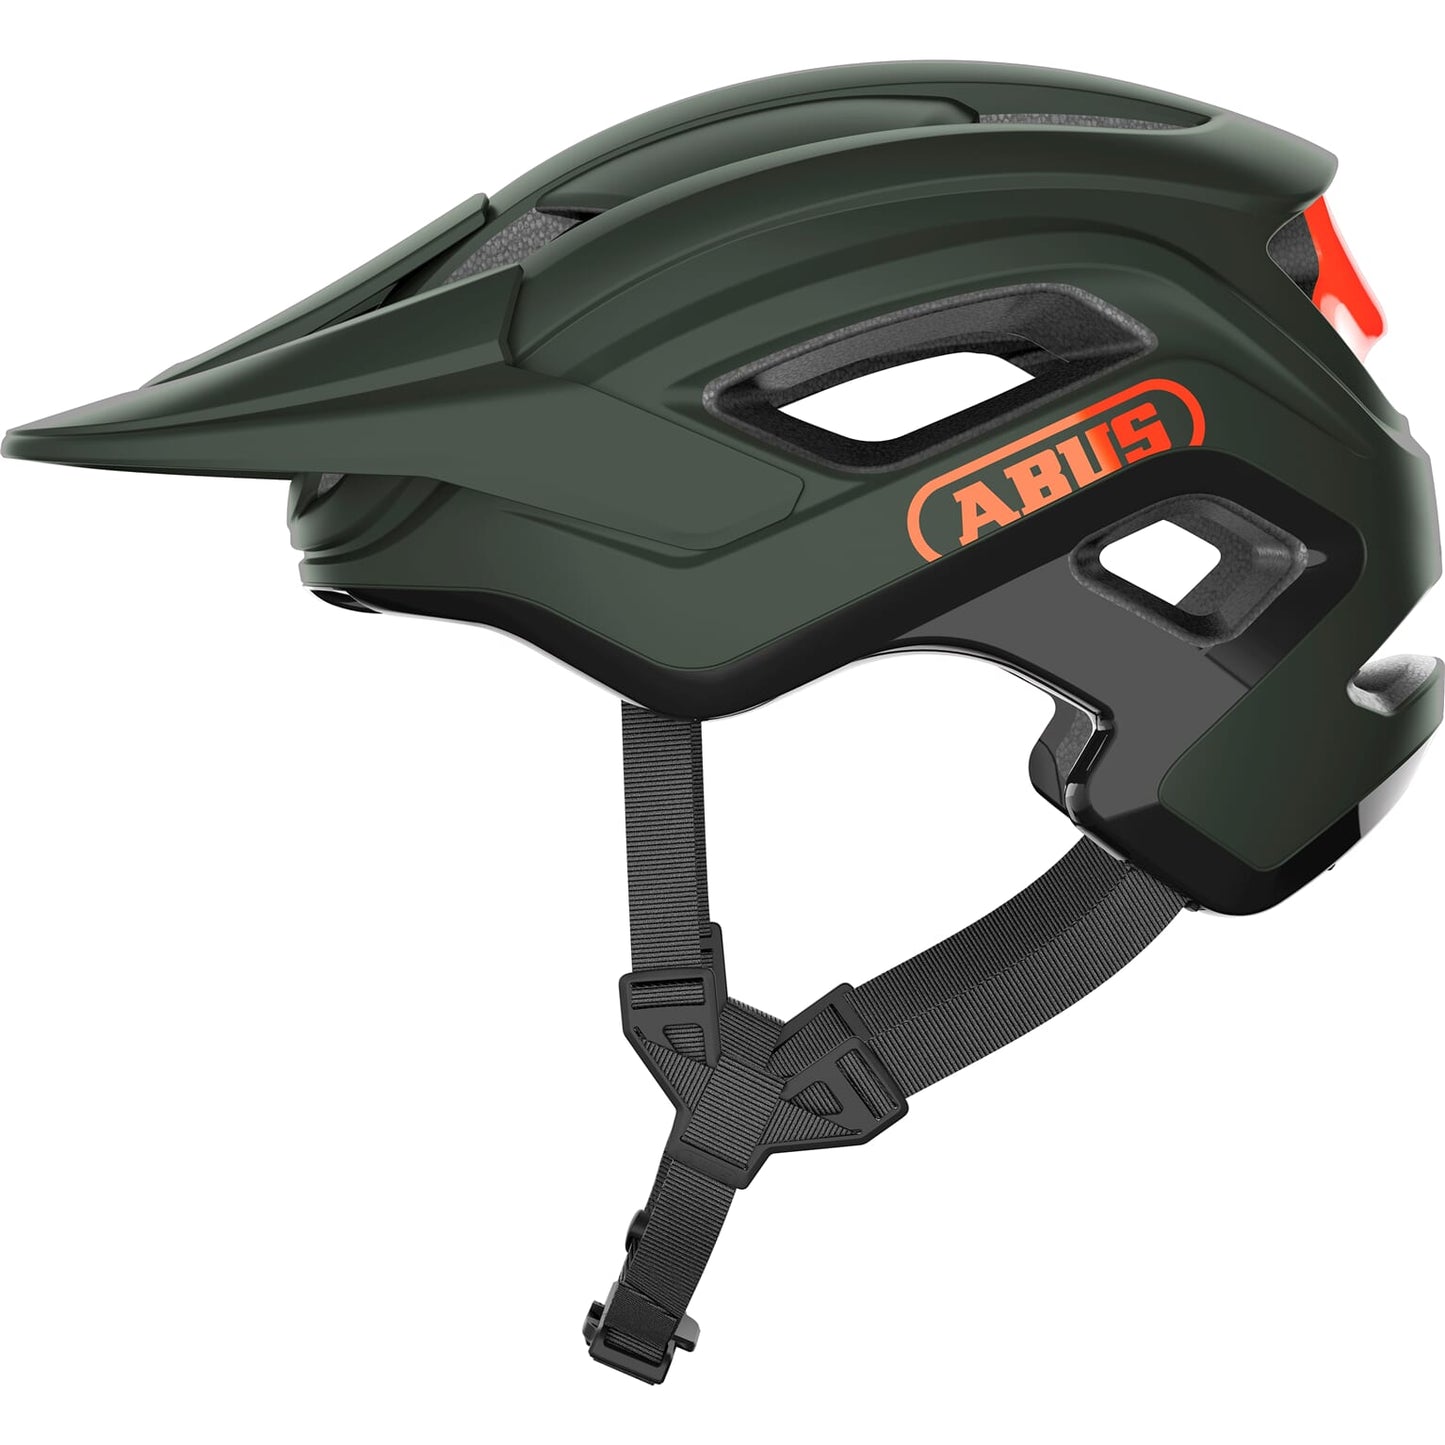 Abus Helmet Cliffhanger Pine Green S 51-55 cm